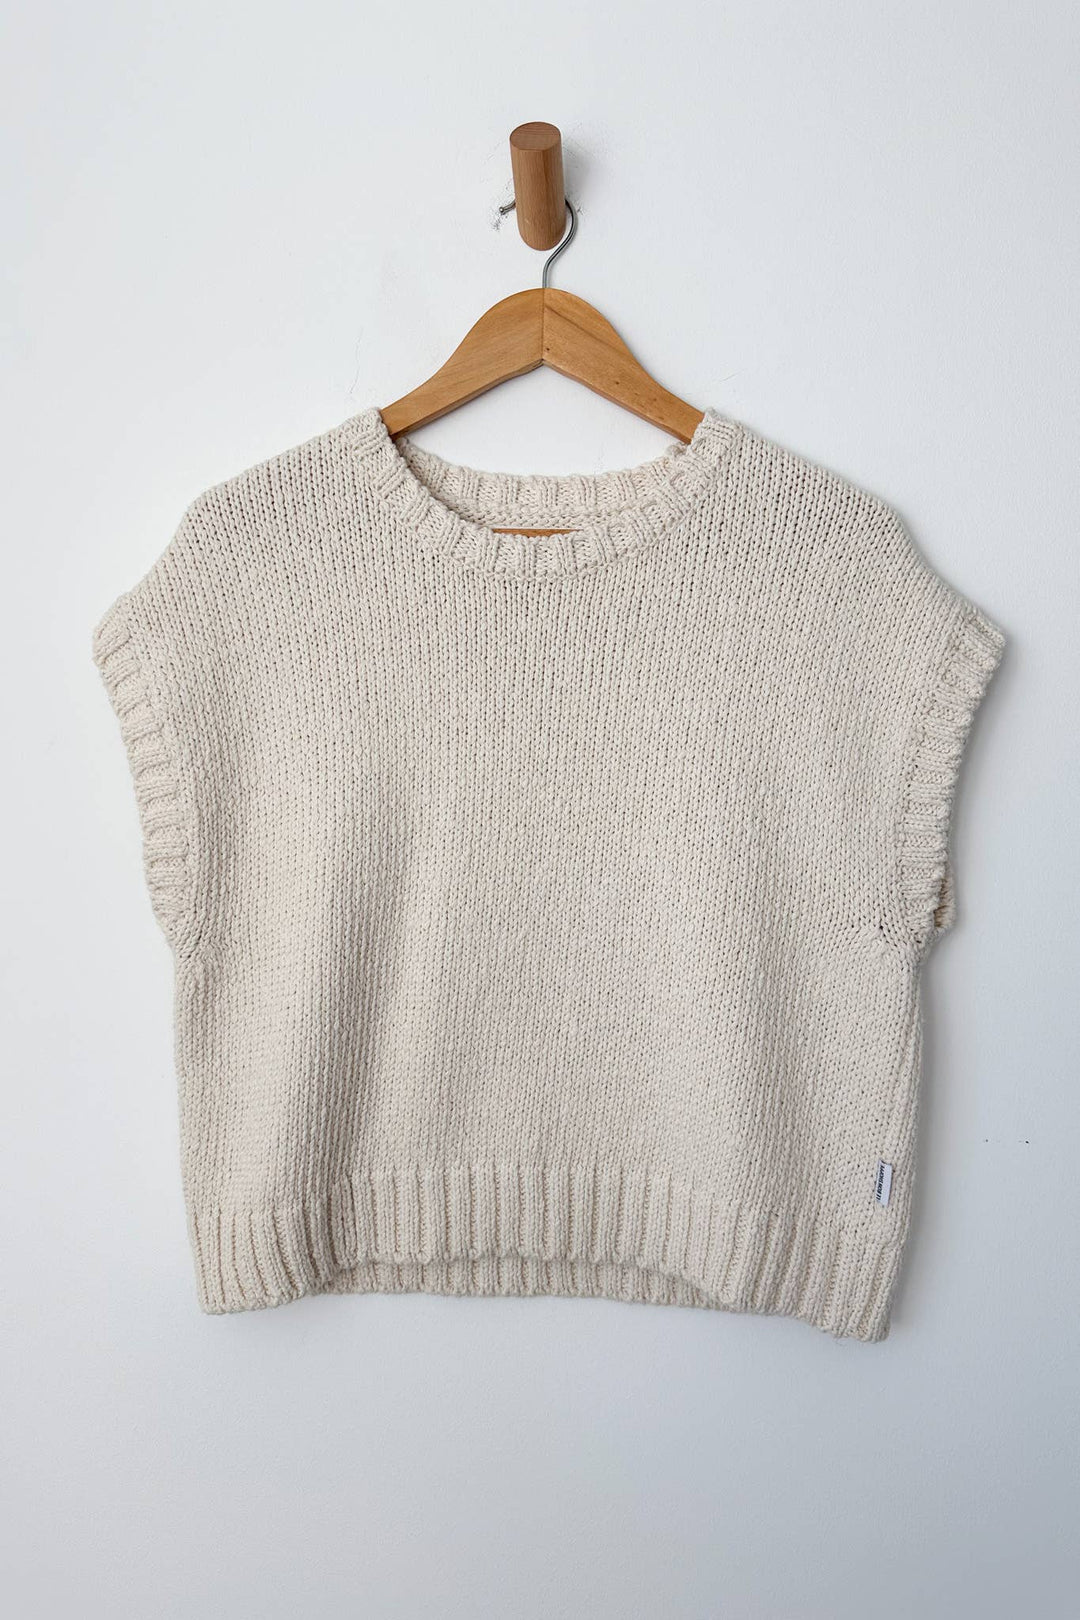 Le Bon Shoppe Pierre Cotton Sweater Top